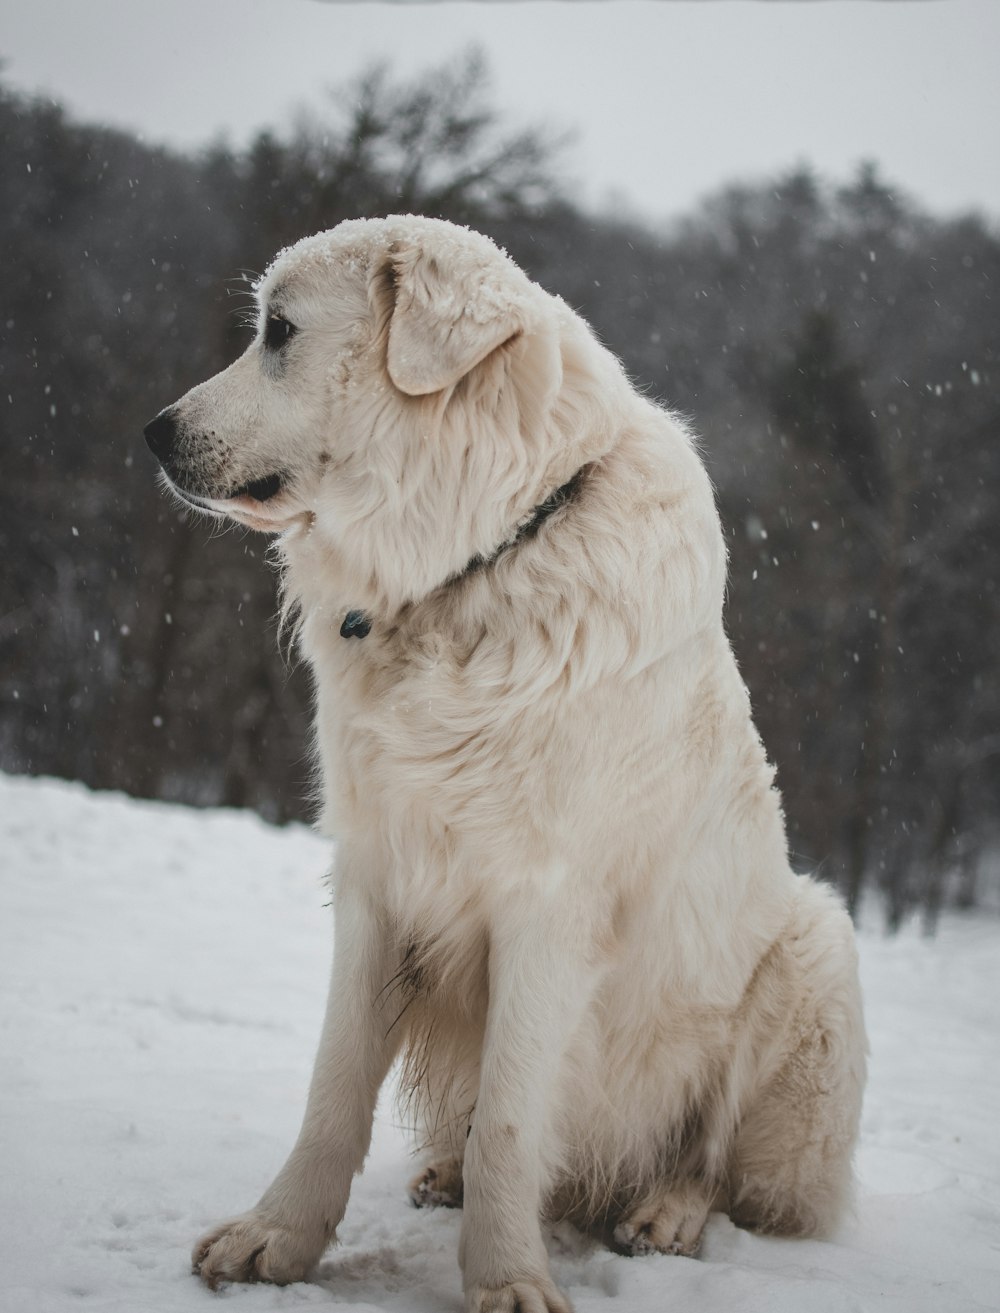 white coated dog sitting on icy surface